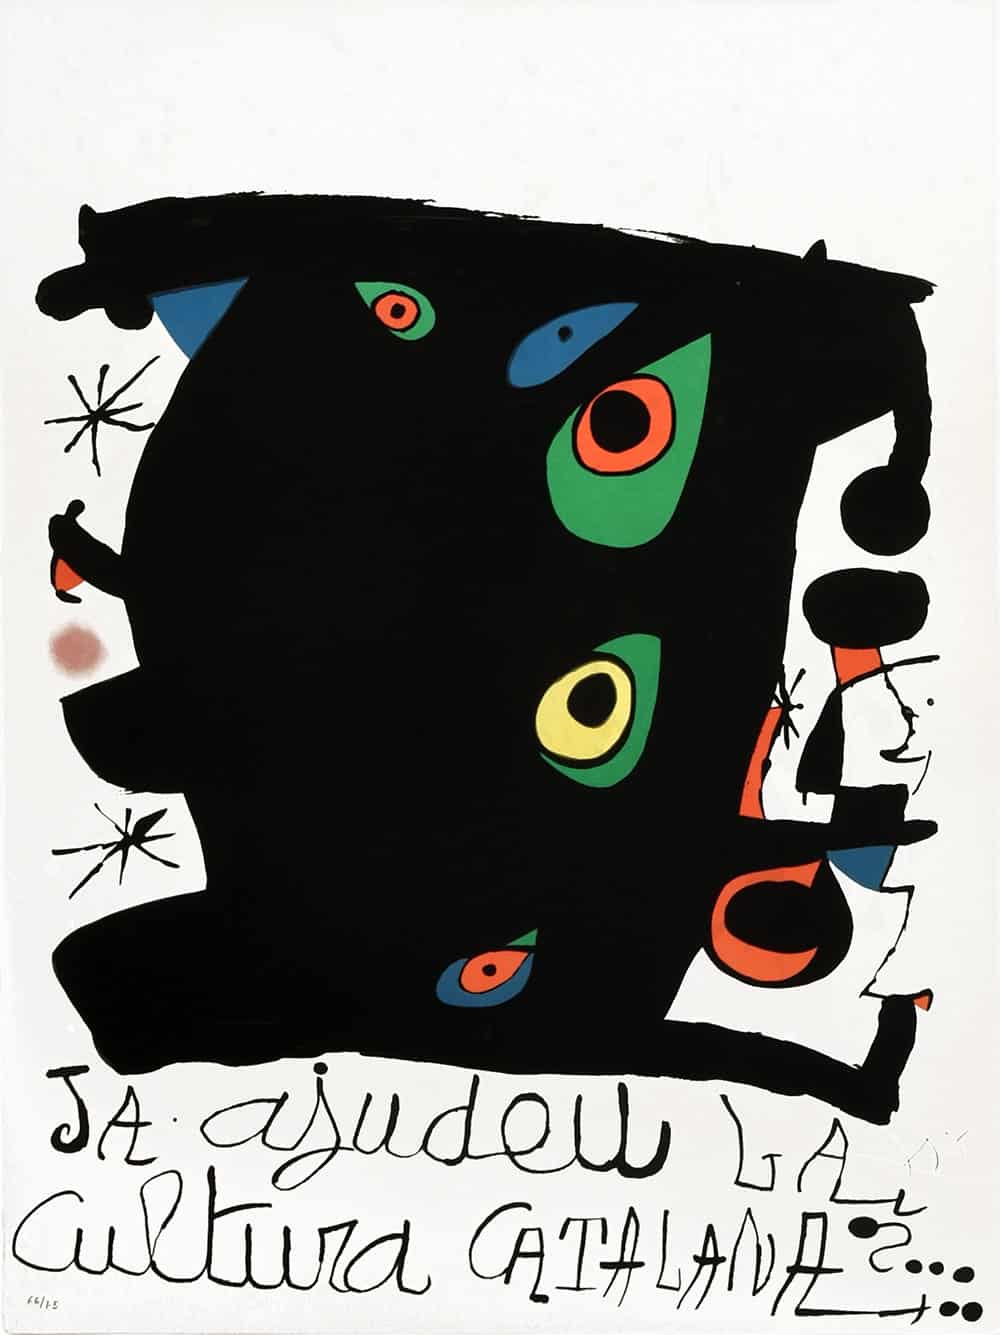 Joan Miró, Ja ajudeu la cultura catalana, 1974